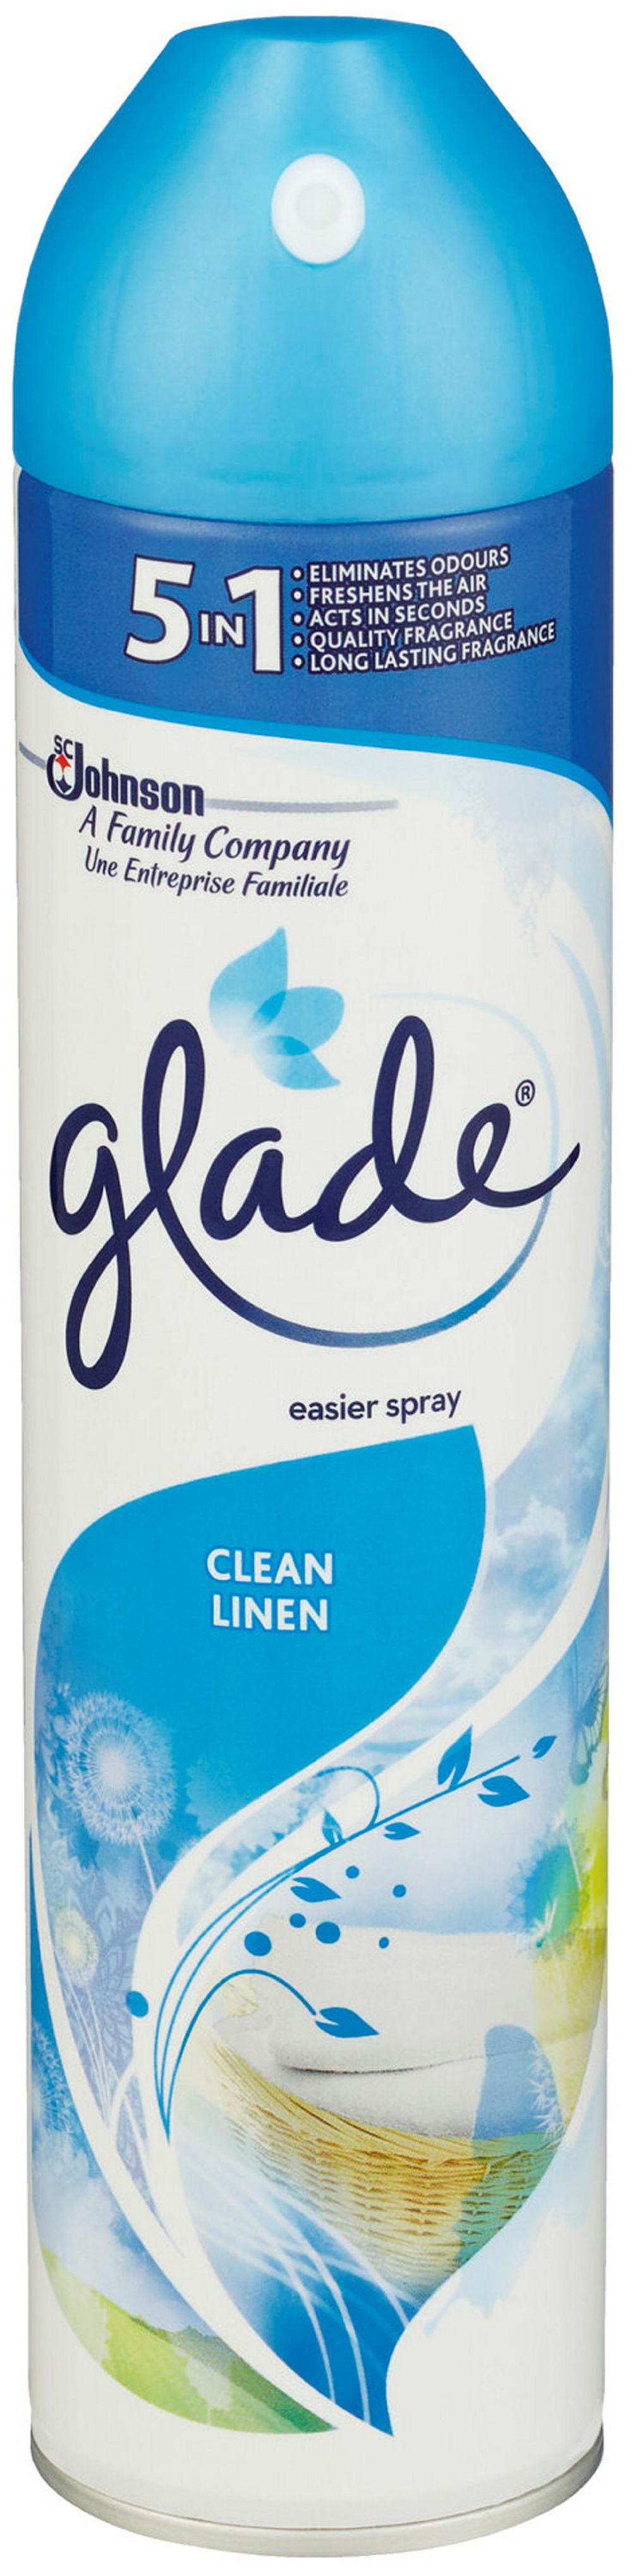 Glade Clean Linen Luftfrisk 300 ml